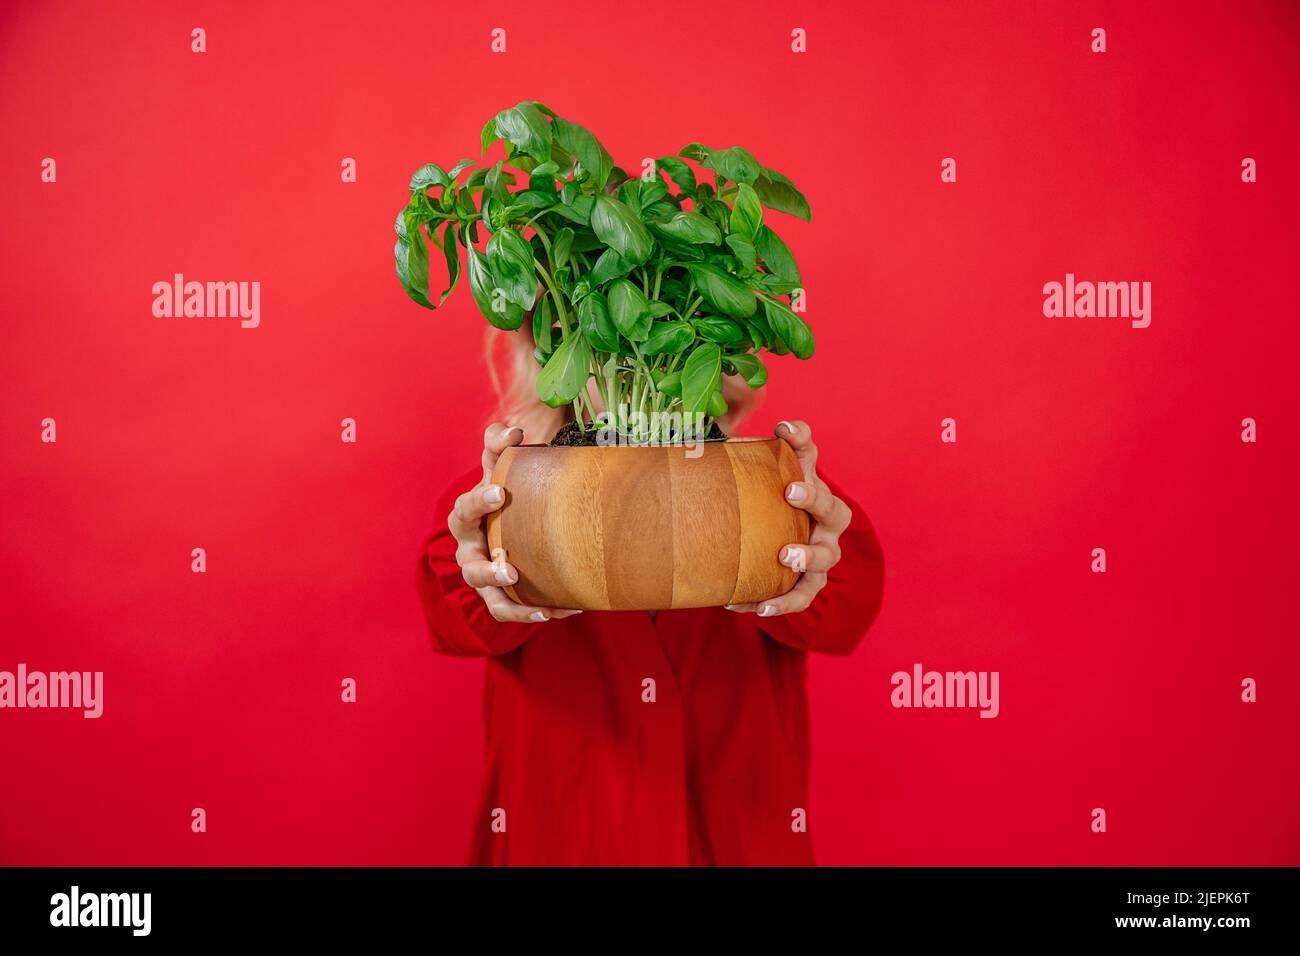 Donna irriconoscibile che sorride la pianta del basilico in pentola di legno su sfondo rosso, sorridendo toothy, guardando la macchina fotografica Foto Stock